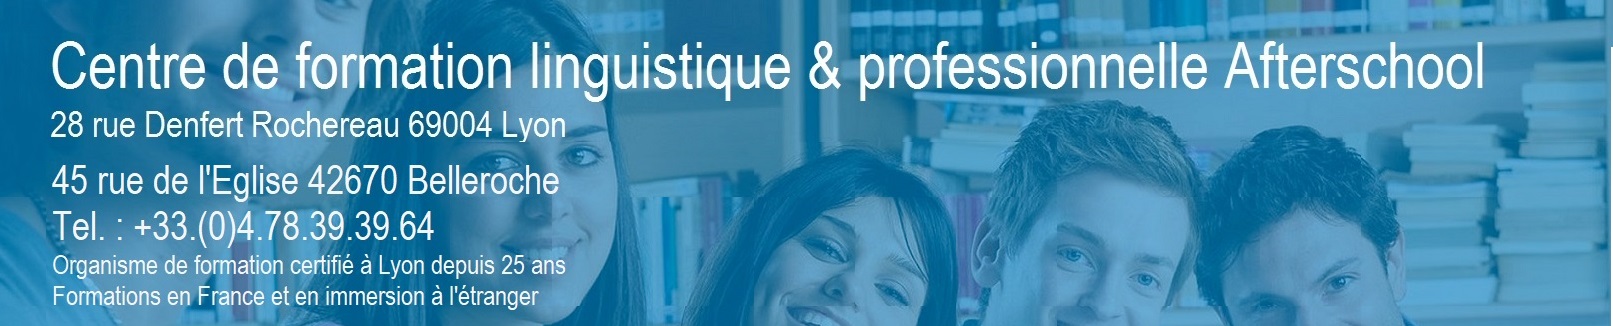 Cours d'anglais à Lyon: CENTRE DE FORMATION LINGUISTIQUE